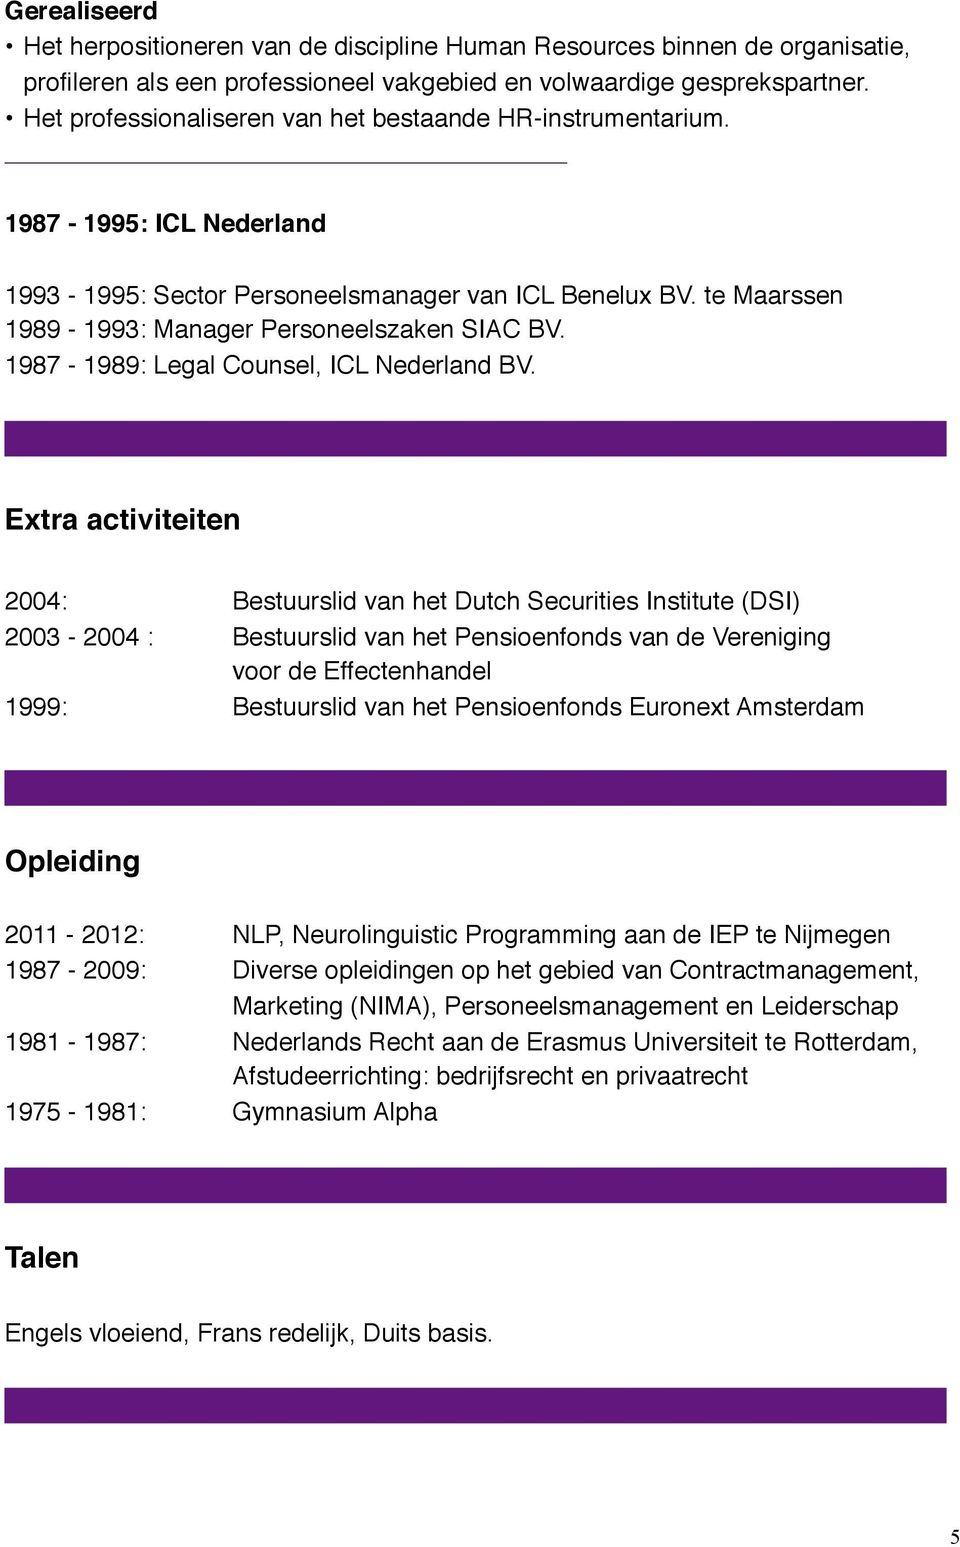 1987-1989: Legal Counsel, ICL Nederland BV. Extra activiteiten 2004:!!! Bestuurslid van het Dutch Securities Institute (DSI) 2003-2004 :!! Bestuurslid van het Pensioenfonds van de Vereniging!